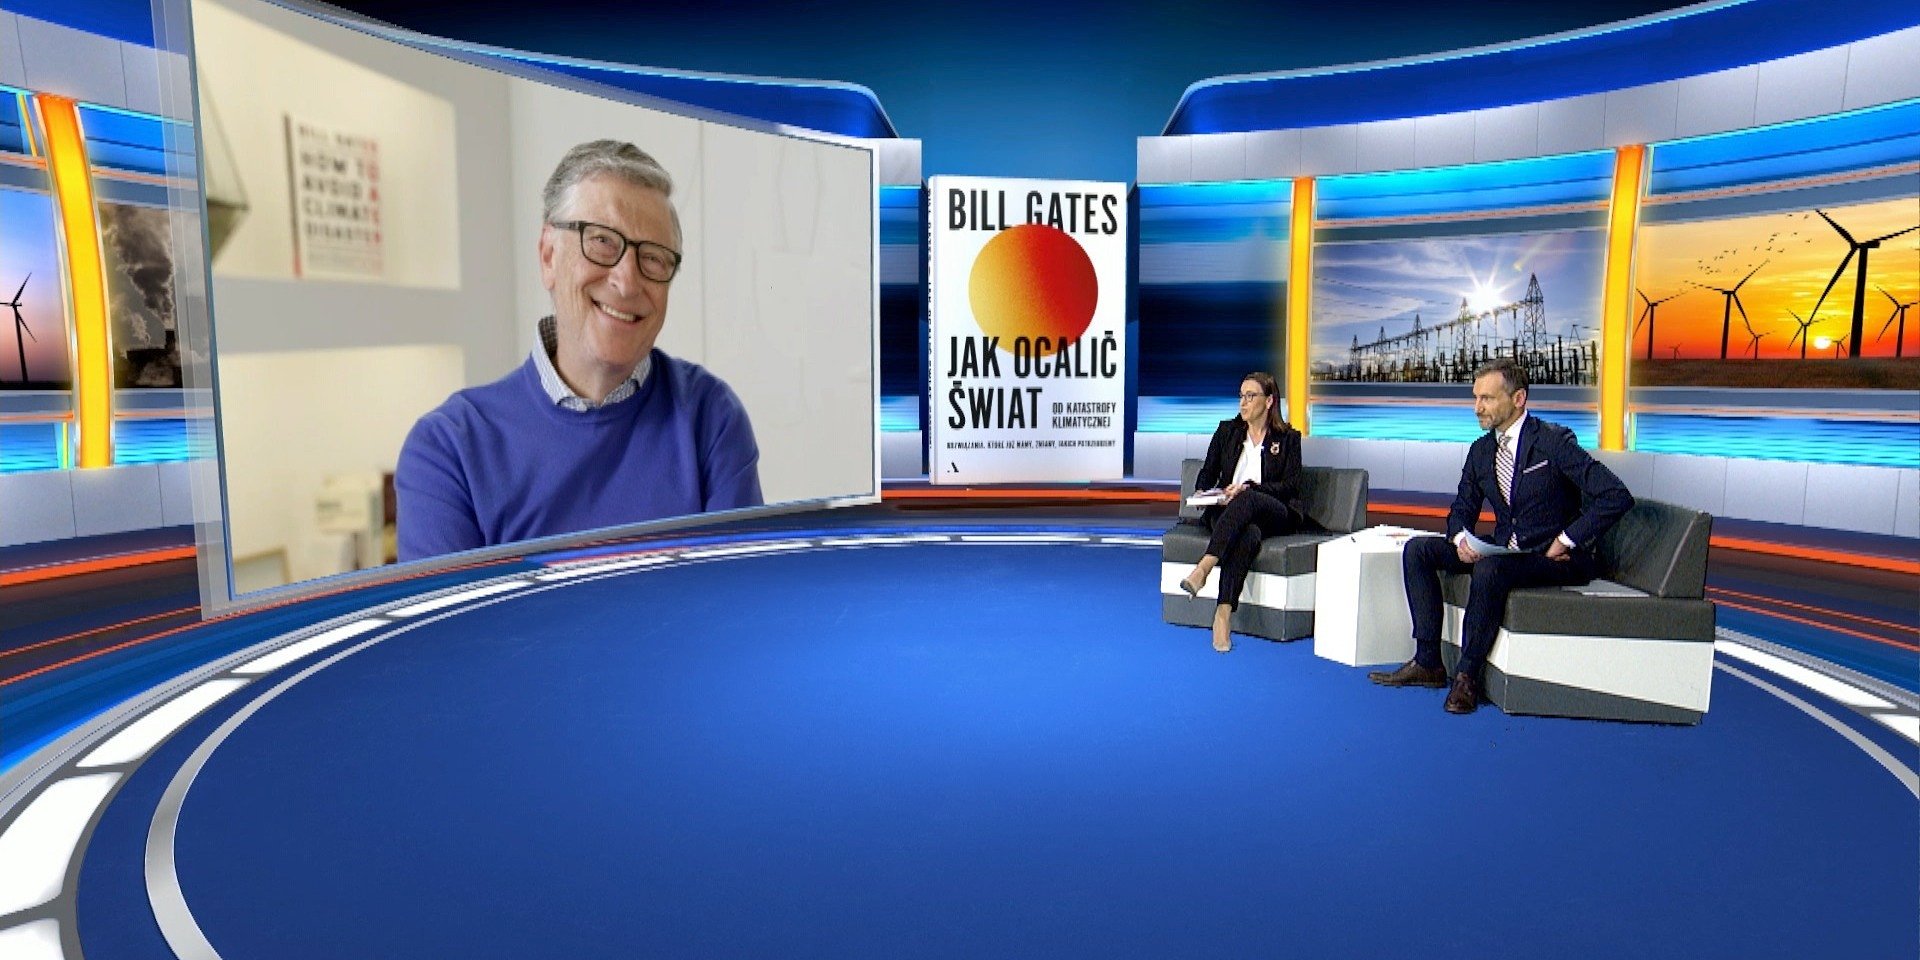 Ekskluzywny wywiad z Billem Gatesem już dostępny online! Można obejrzeć go zupełnie za darmo – gdzie?